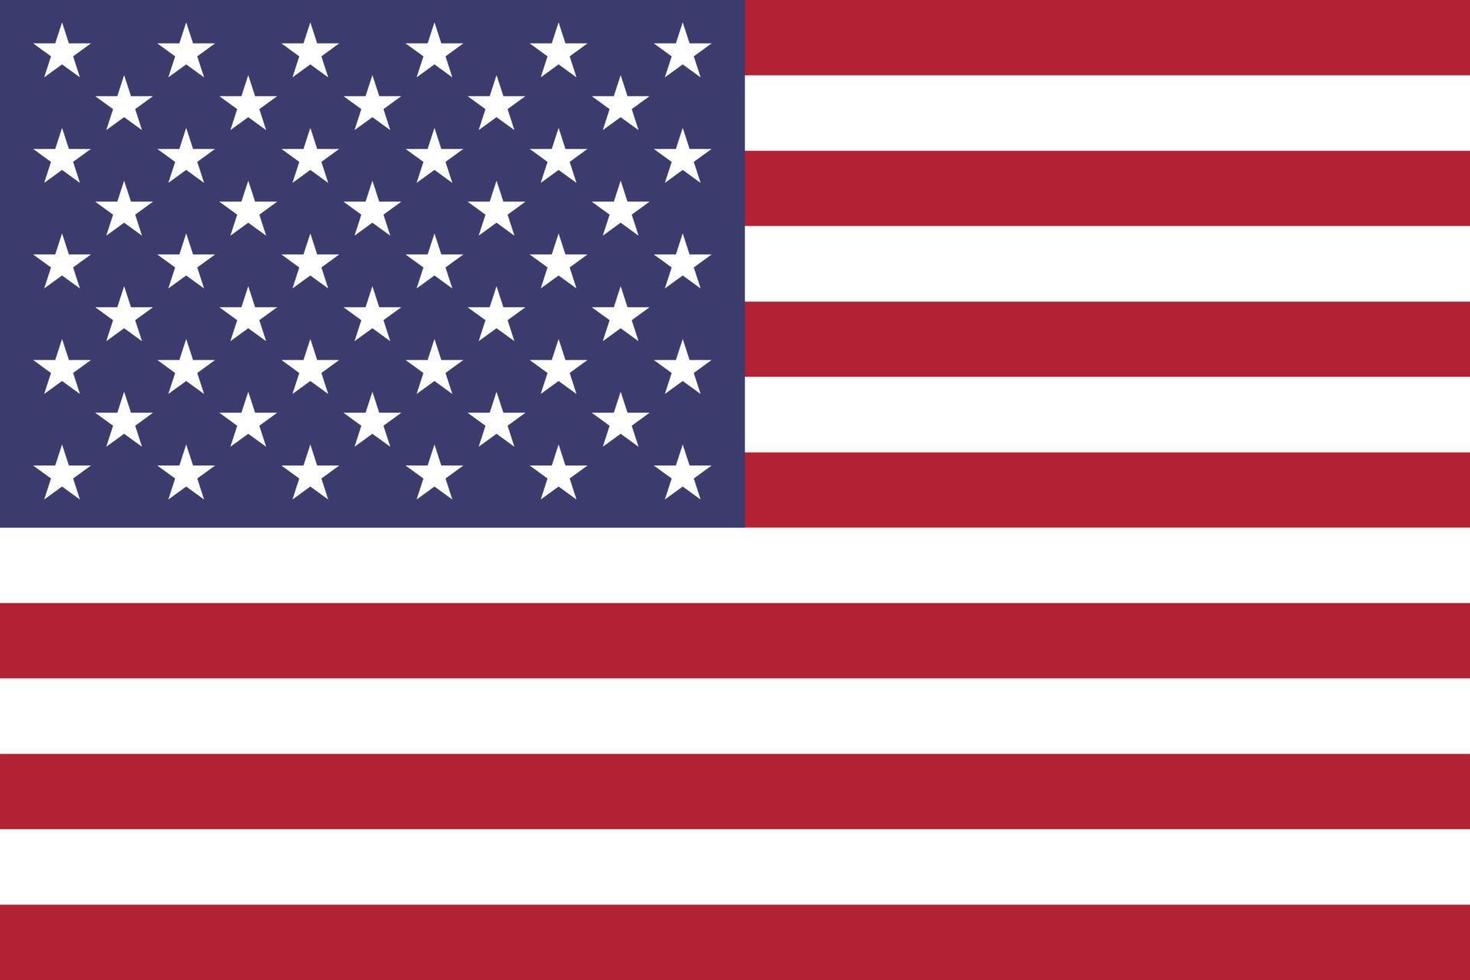 gratuito scarica vettore Immagine di americano bandiera, americano bandiera 4 ° luglio illustrazione, il originale americano bandiera, il stella lustrato bandiera unito stati noi bandiera